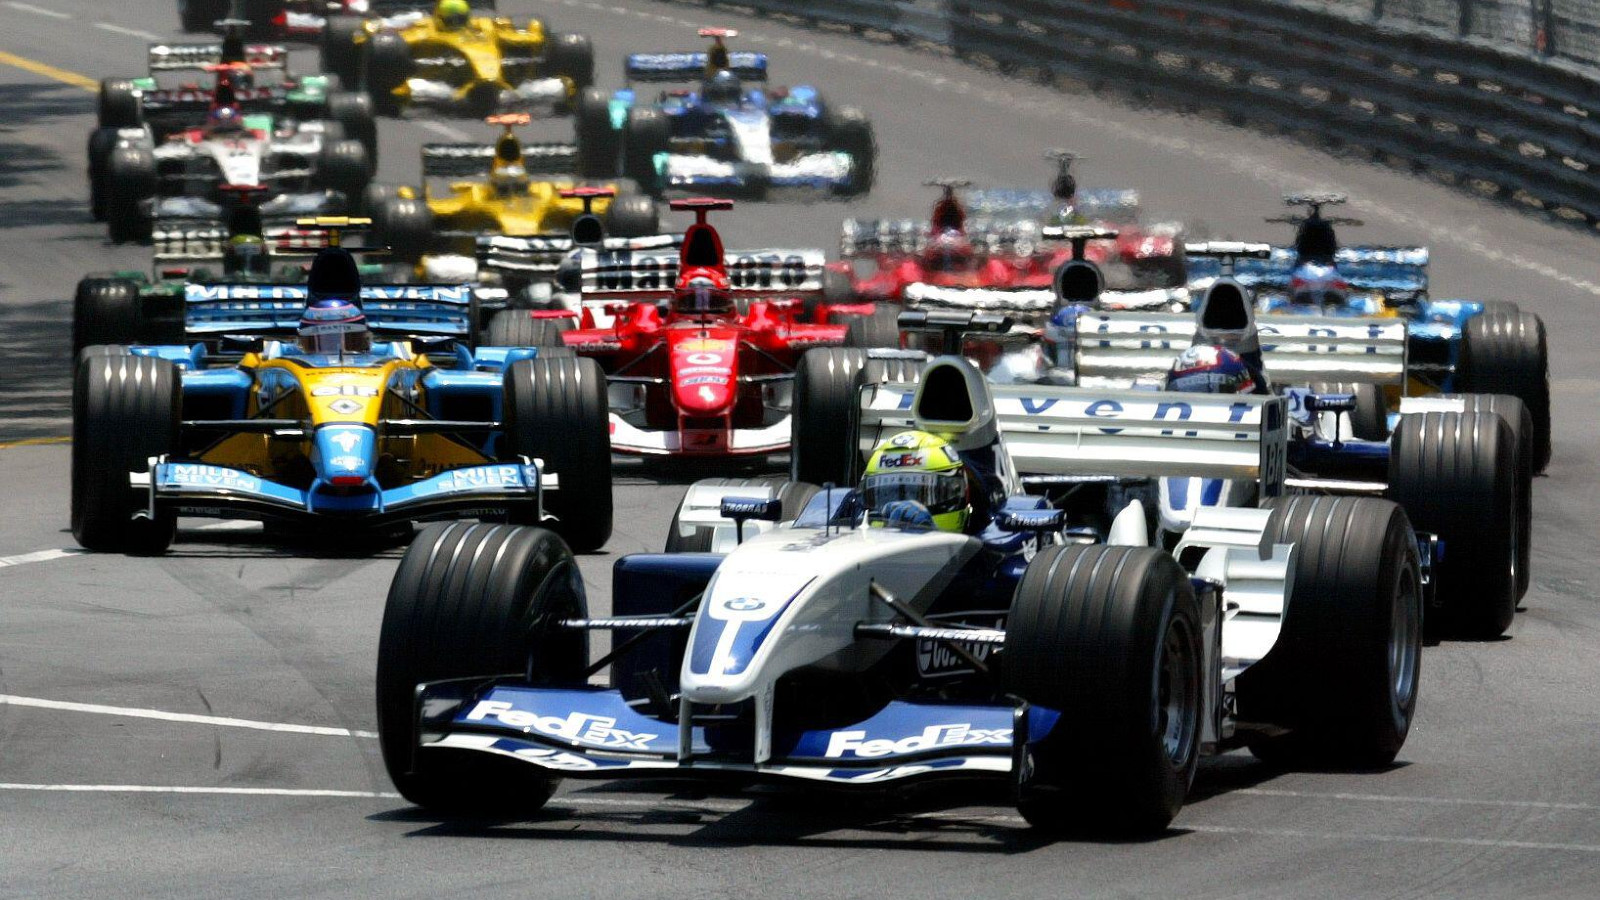 Williams' Ralf Schumacher at the 2003 Monaco Grand Prix. Monte Carlo, May 2003.